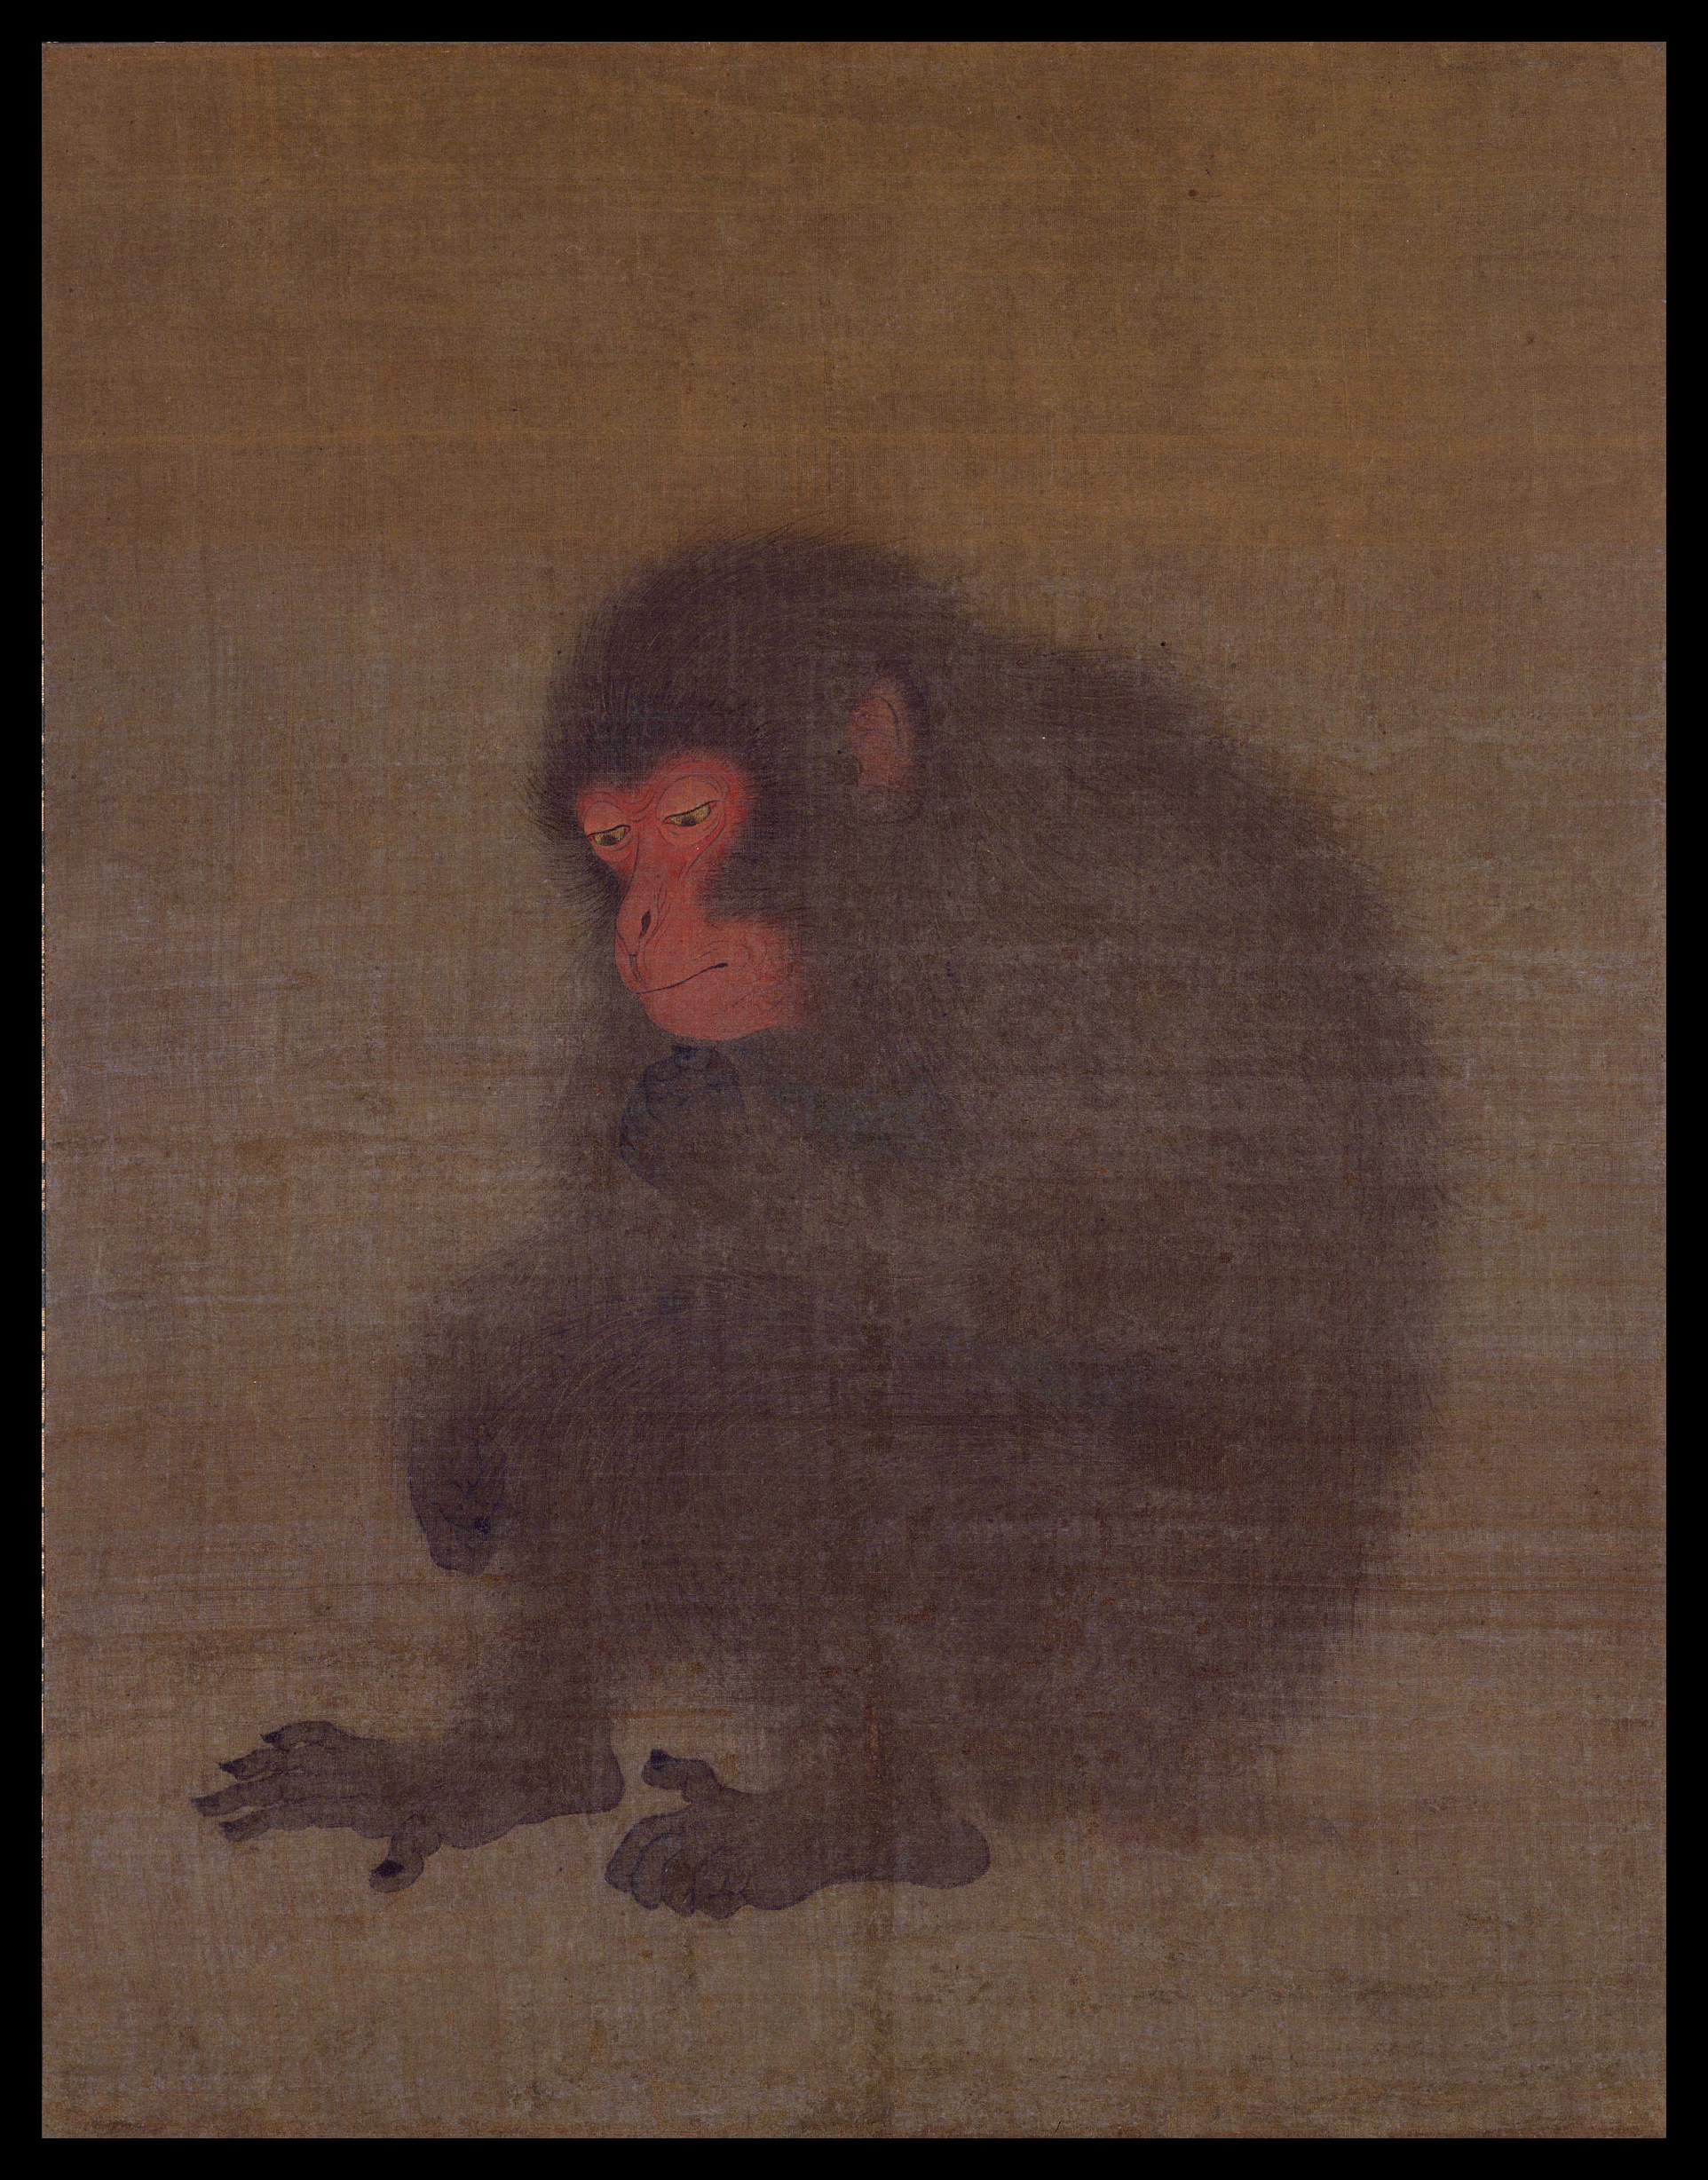 Ein Affe by Mao Song - 2. Viertel des 12. Jhd. - 47,1 x 36,7 cm Nationalmuseum Tokio